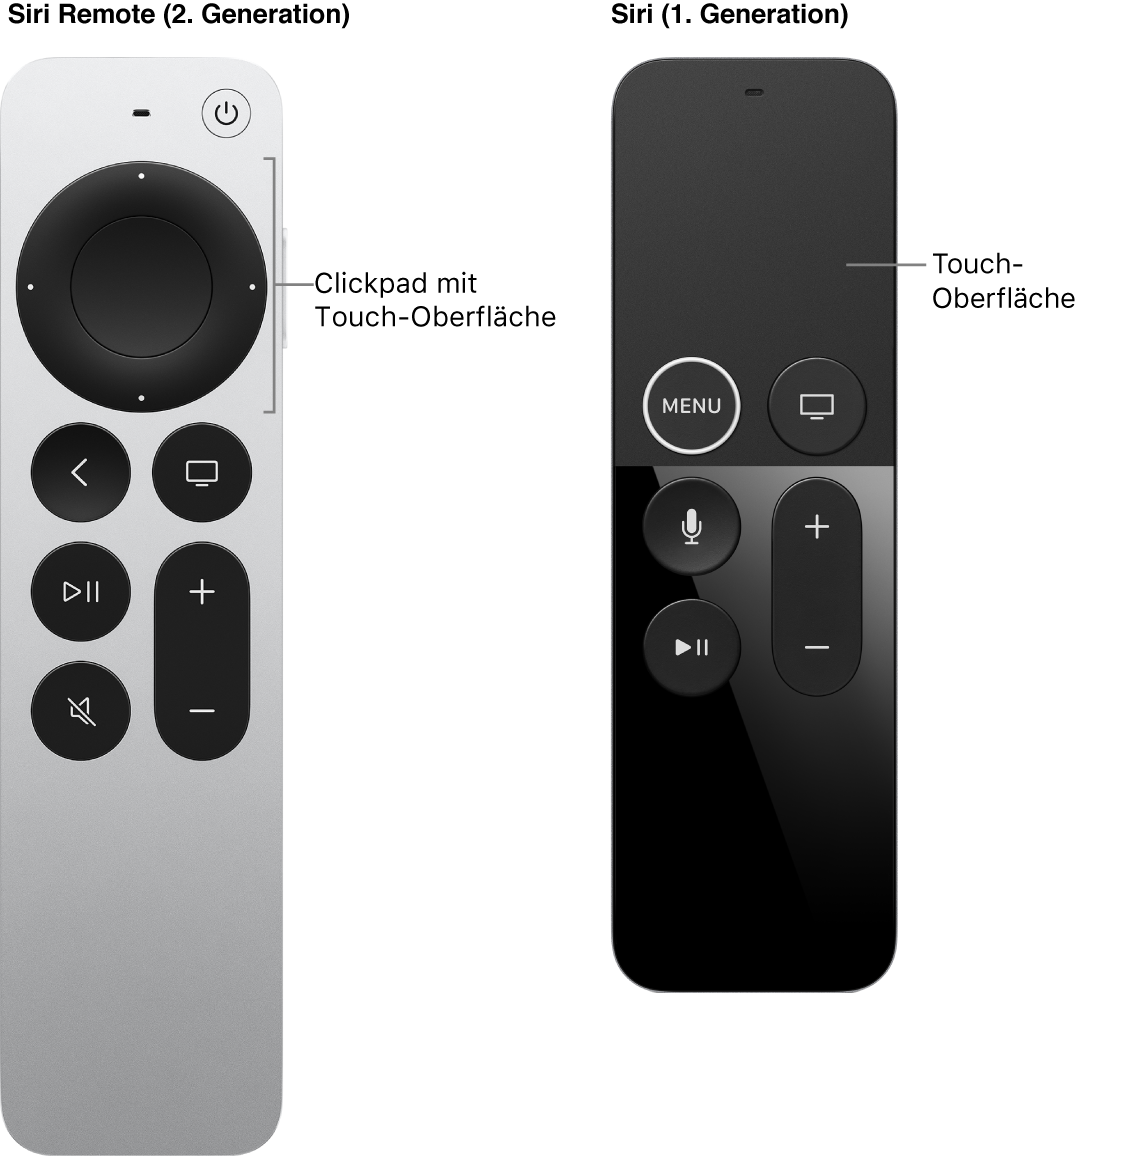 Siri Remote (2. Generation) mit Clickpad und Siri Remote (1. Generation) mit Touch-Oberfläche